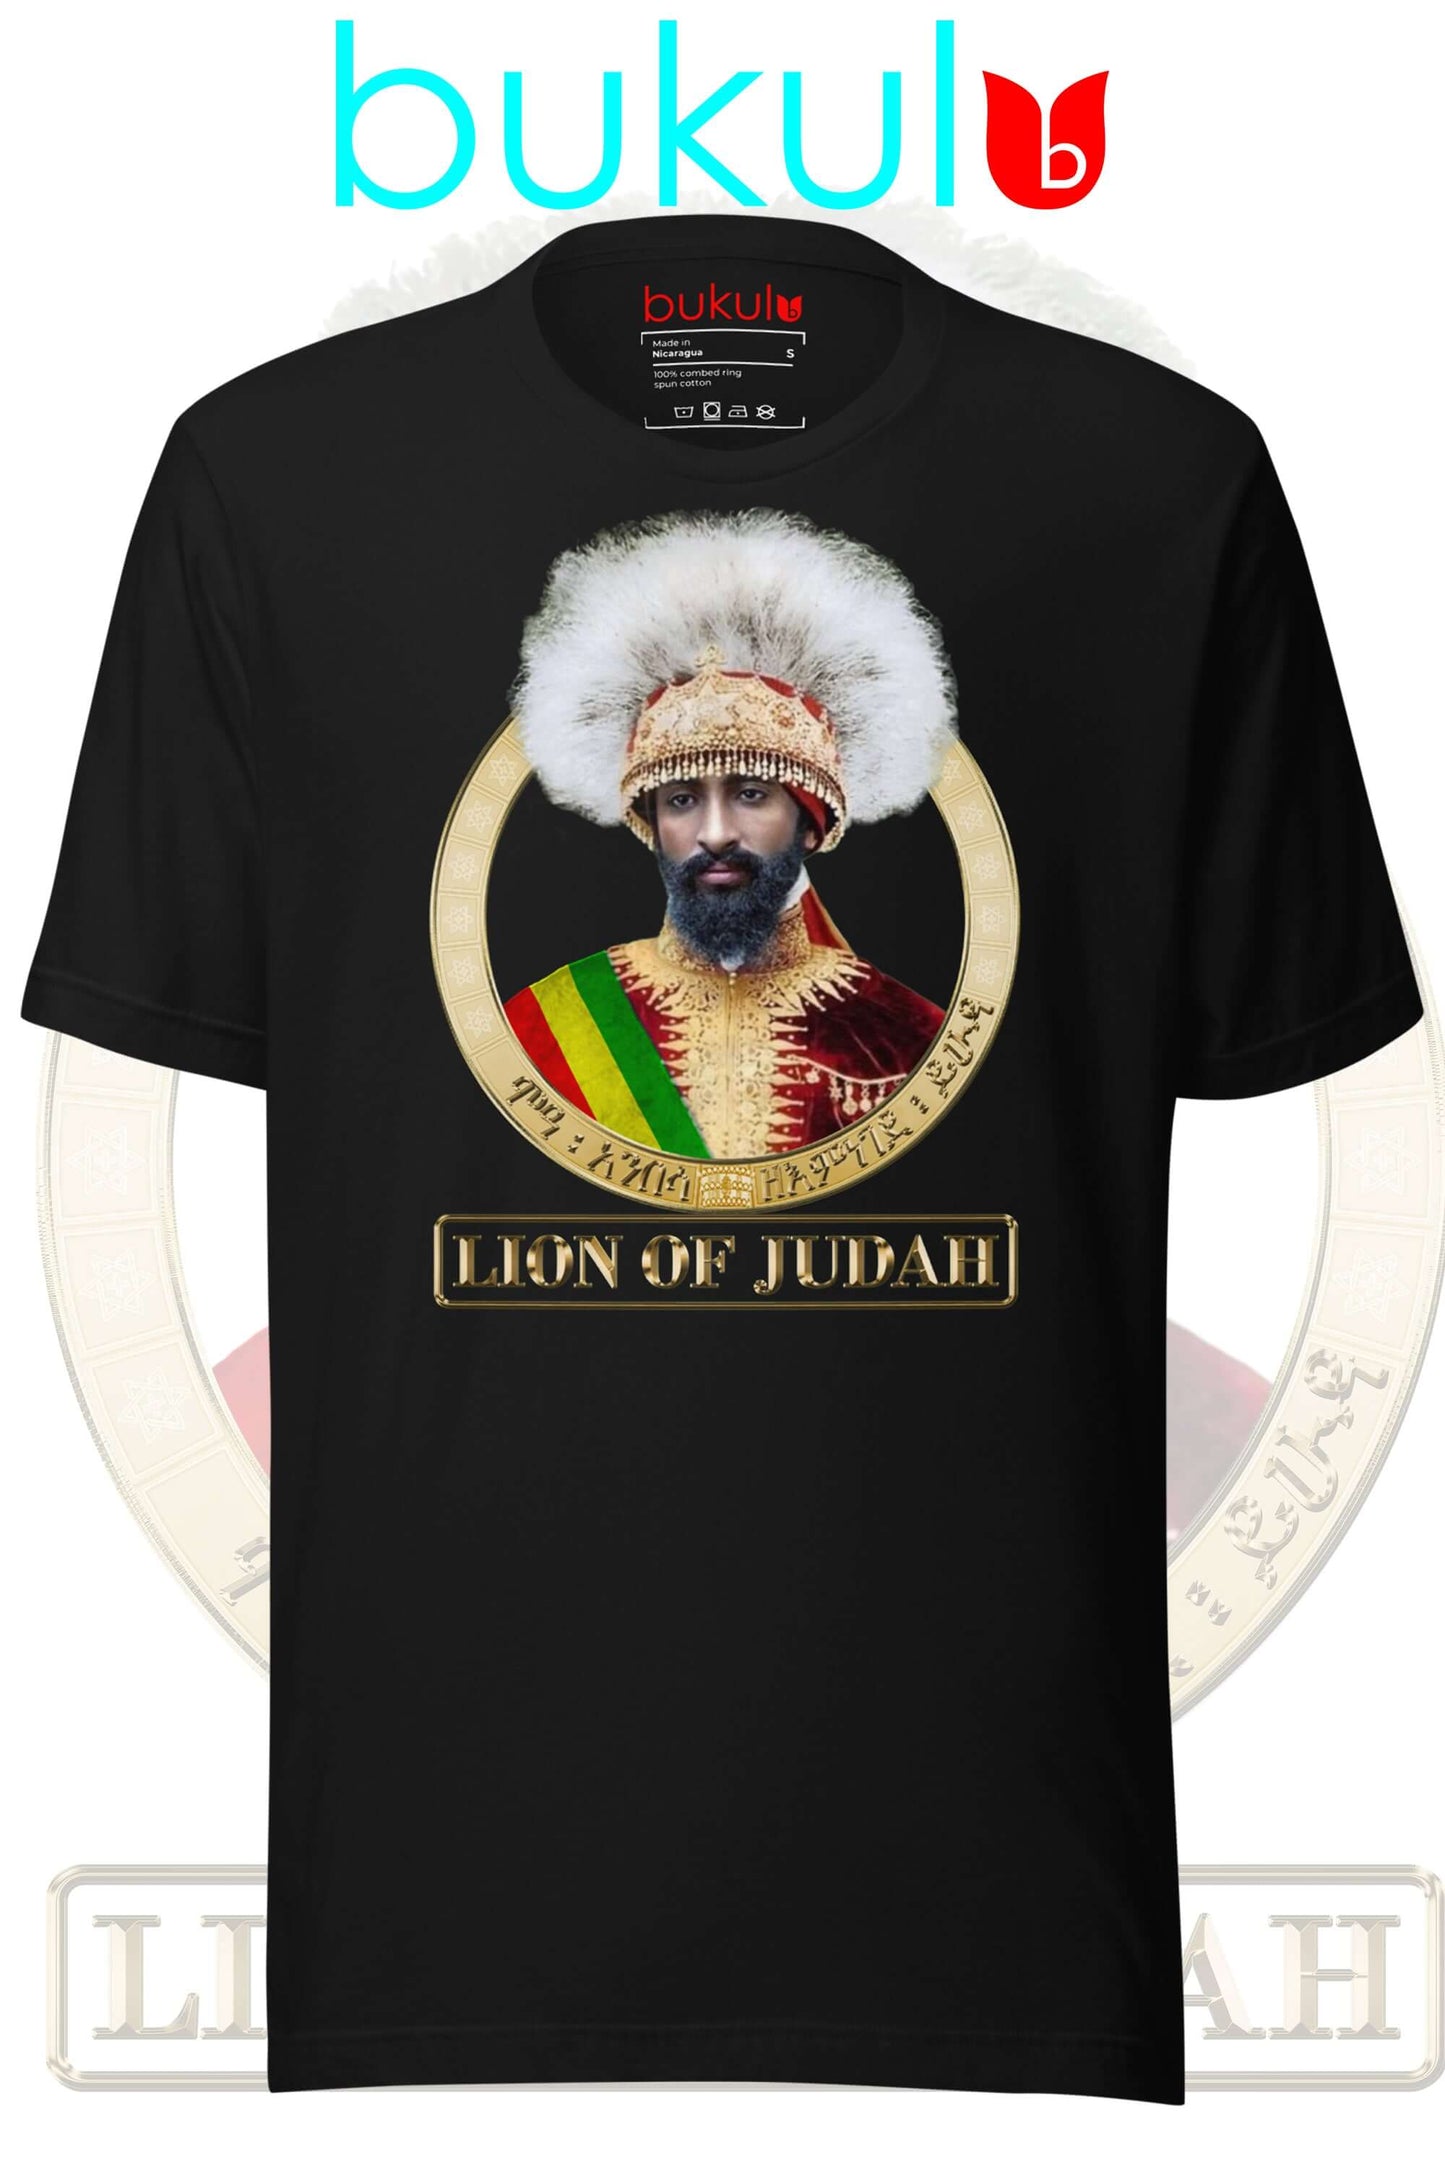 Rastafari inspired Lion of Judah tee by Bukulu - celebrate Haile Selassie's legacy.